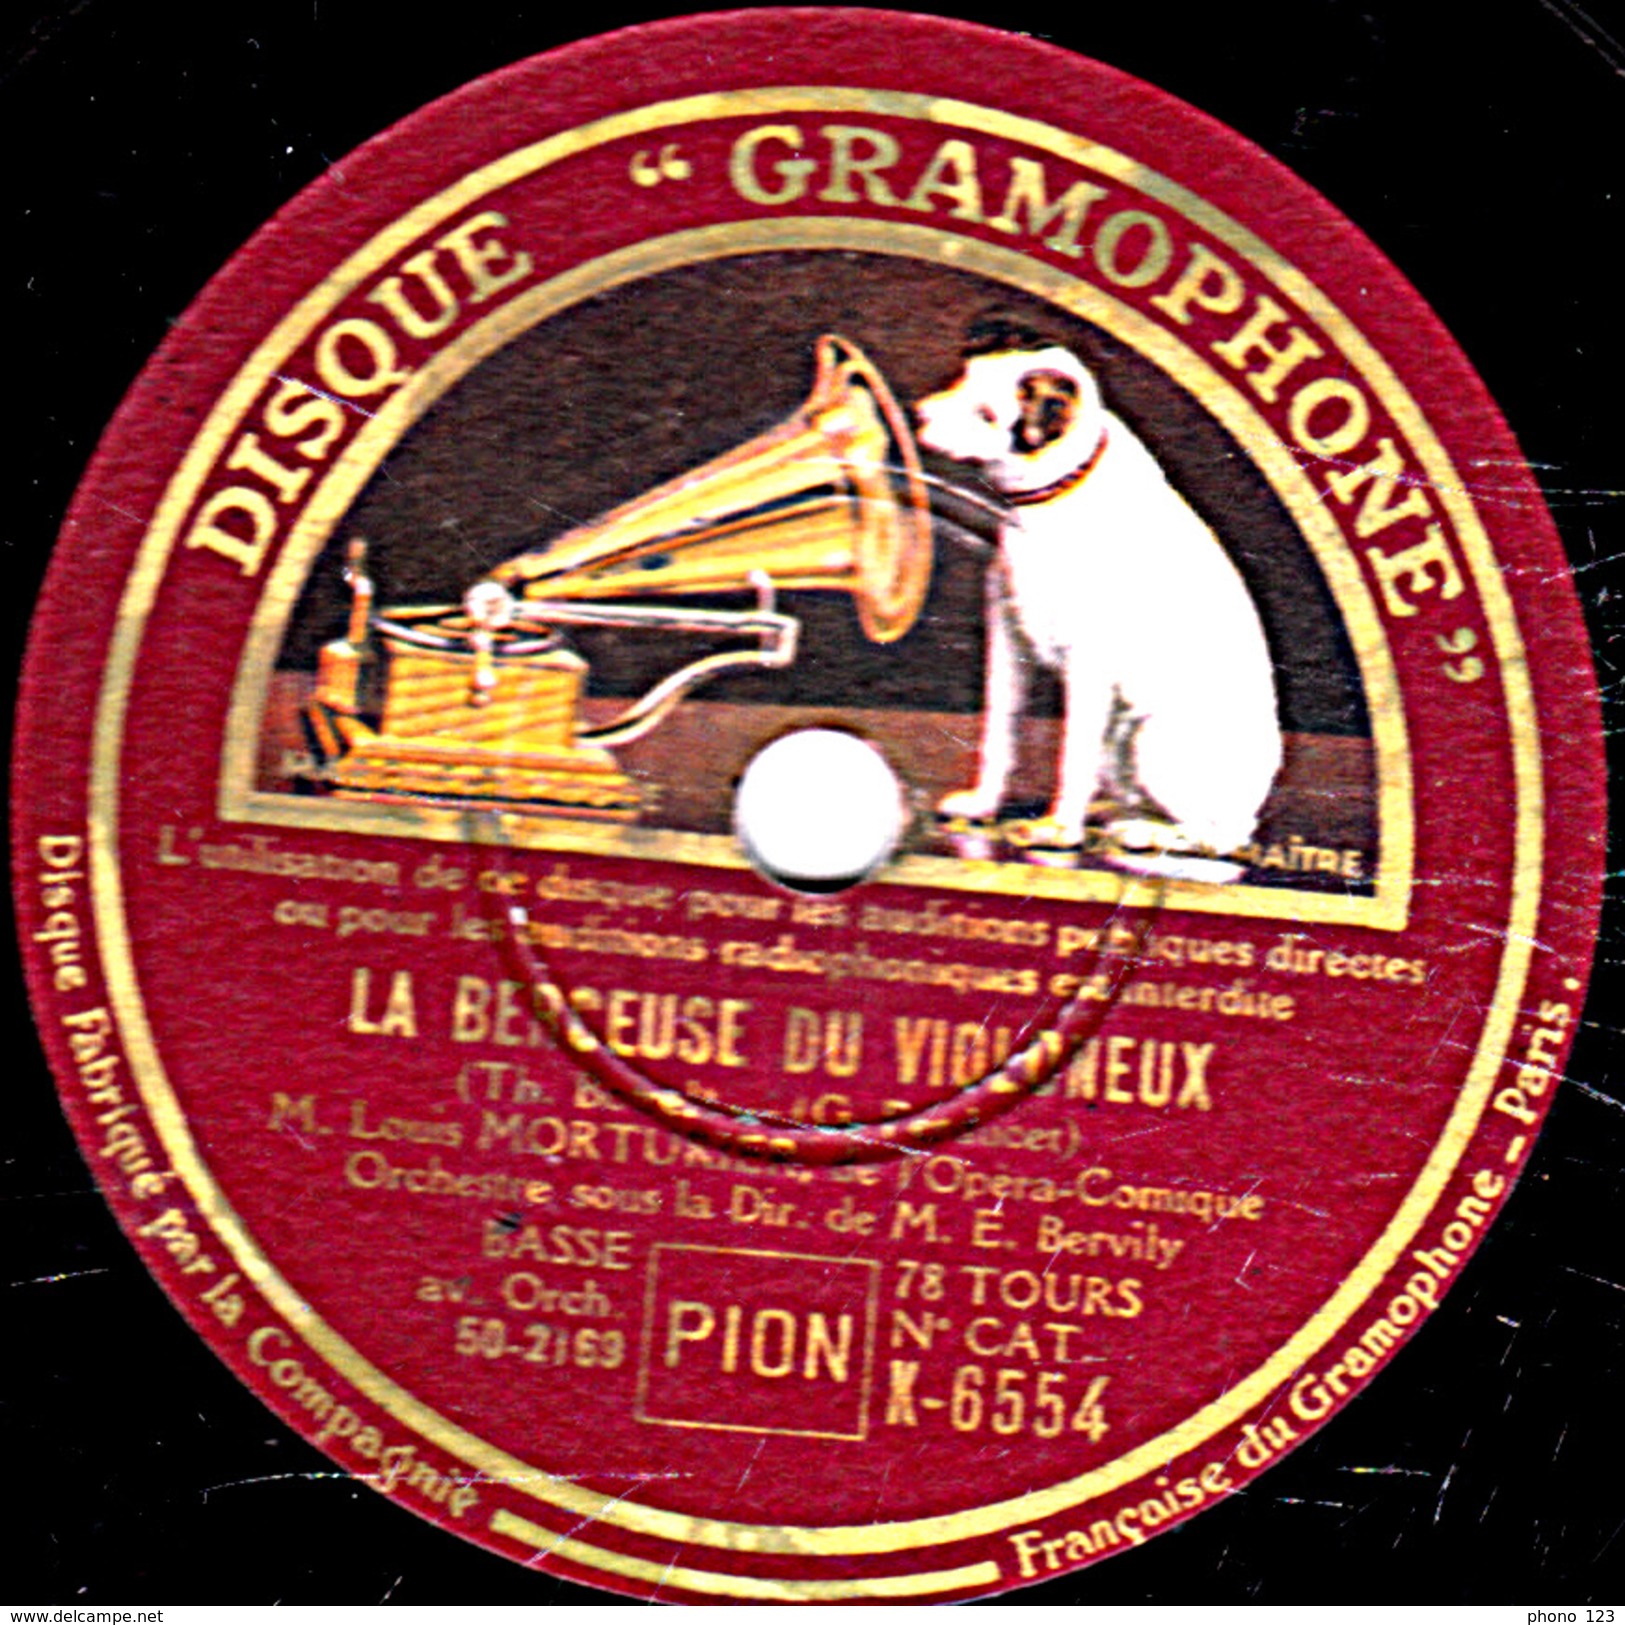 78 T. - 25 Cm - état B -  Louis MORTURIER - LE BINIOU - LA BERCEUSE DU VIOLONEUX - 78 T - Disques Pour Gramophone